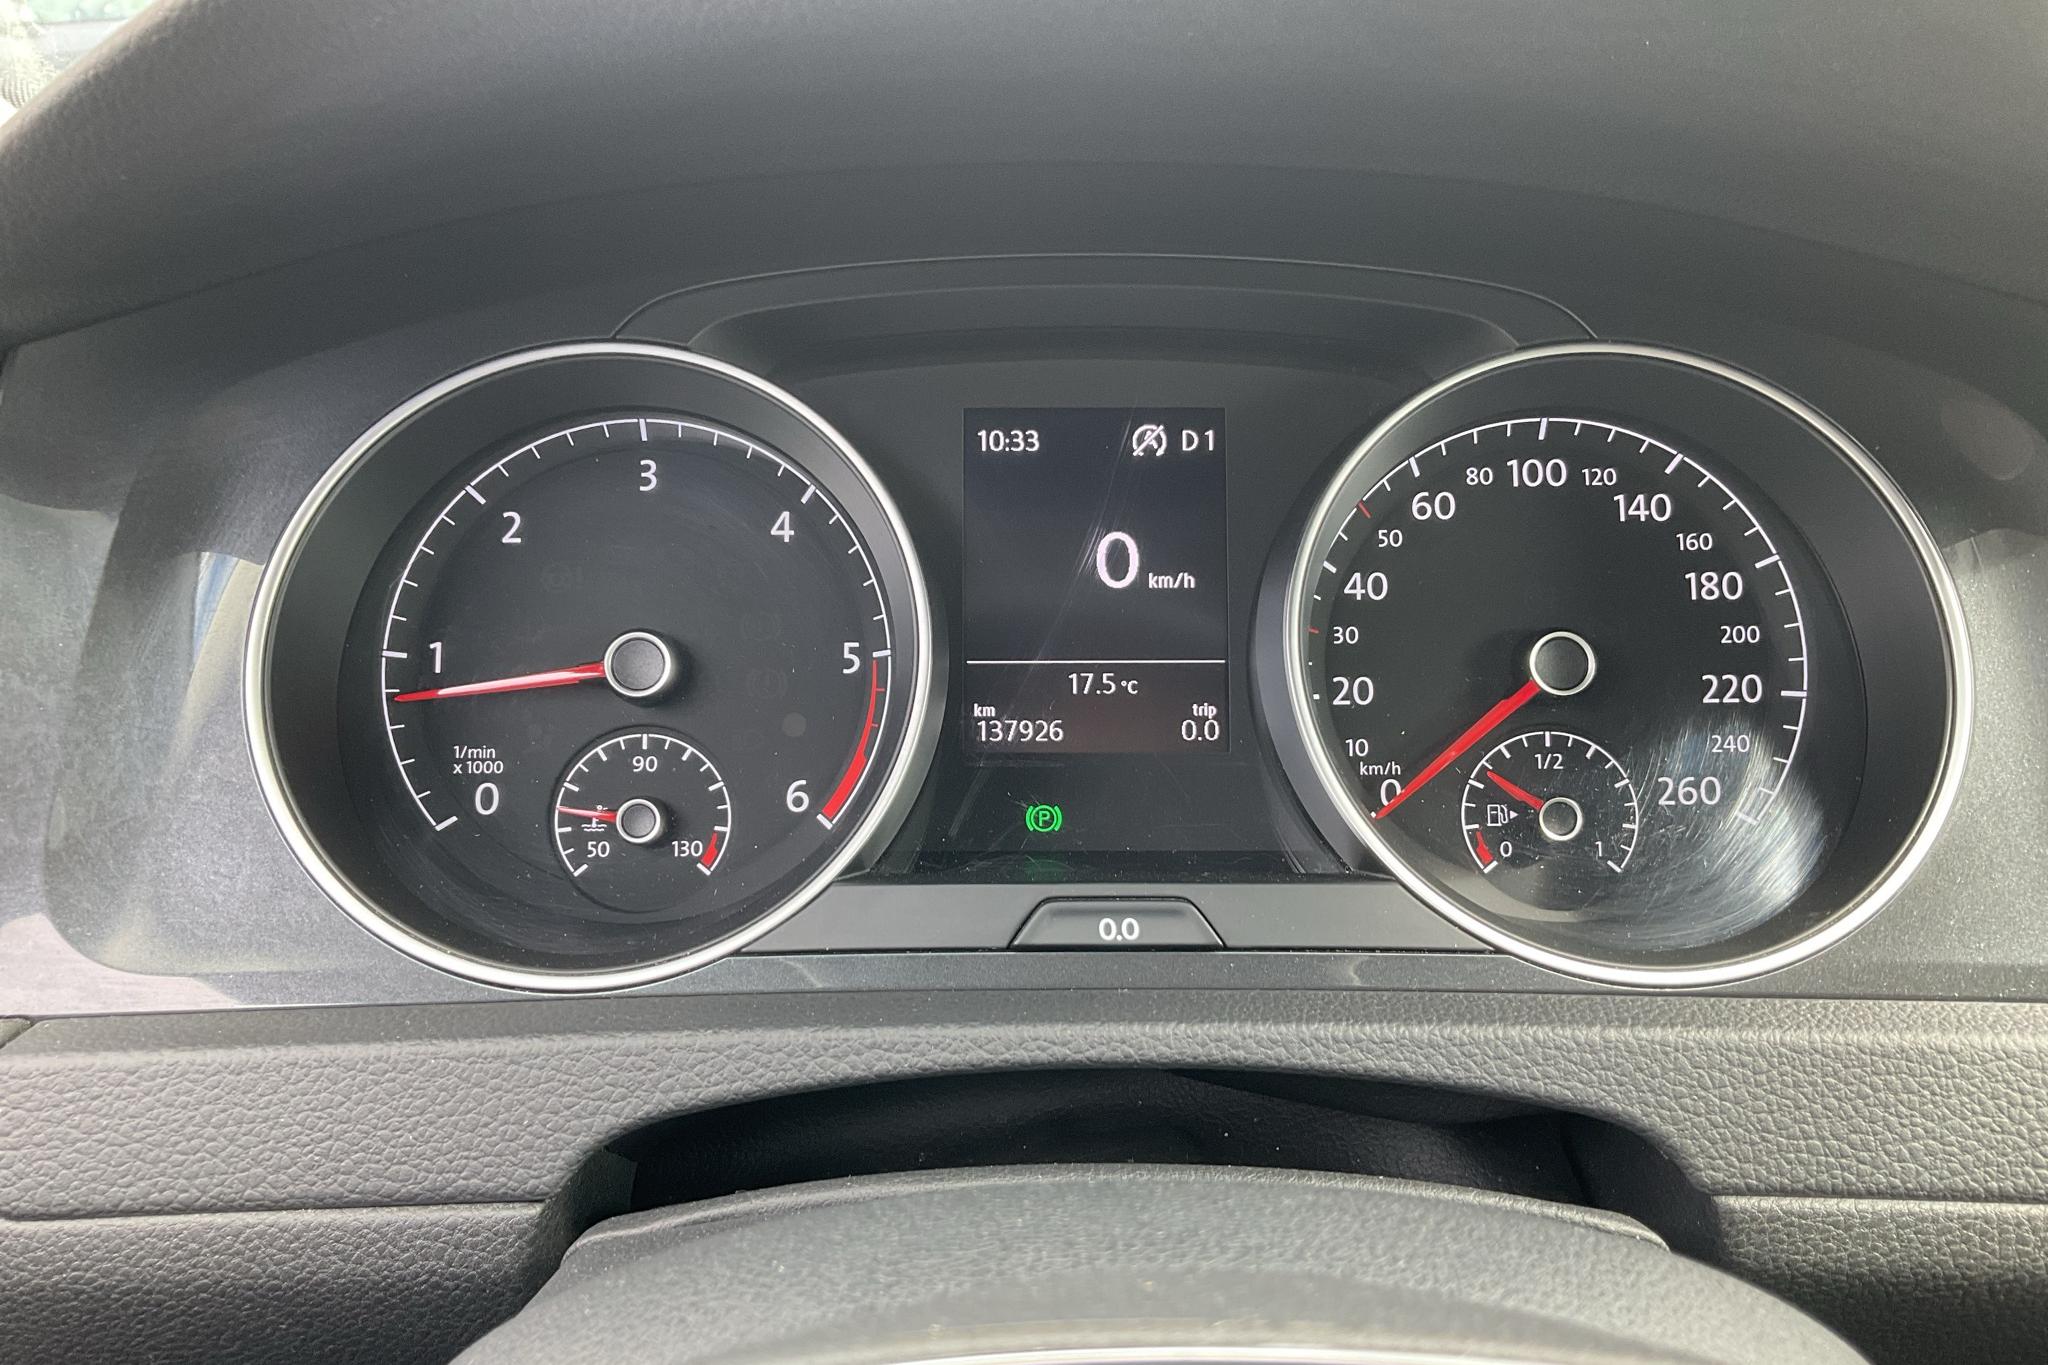 VW Golf VII 1.6 TDI Sportscombi (115hk) - 13 793 mil - Automat - vit - 2019